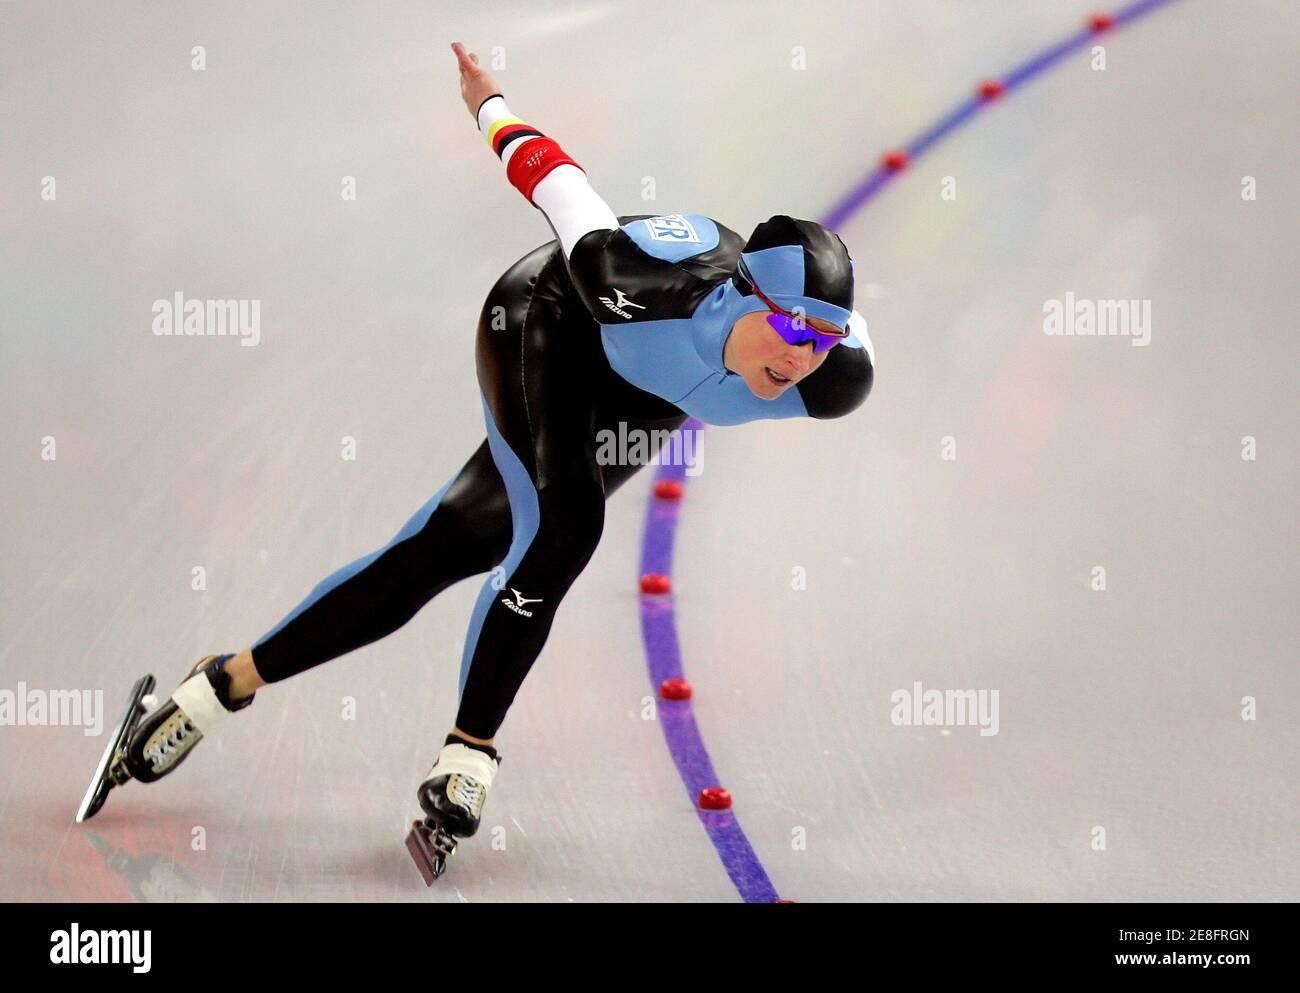 La Claudia Pechstein d'Allemagne participe à la course de patinage de vitesse des femmes de 3000 mètres aux Jeux Olympiques d'hiver de Turin 2006 à Turin, en Italie, le 12 février 2006. REUTERS/Jerry Lampen Banque D'Images